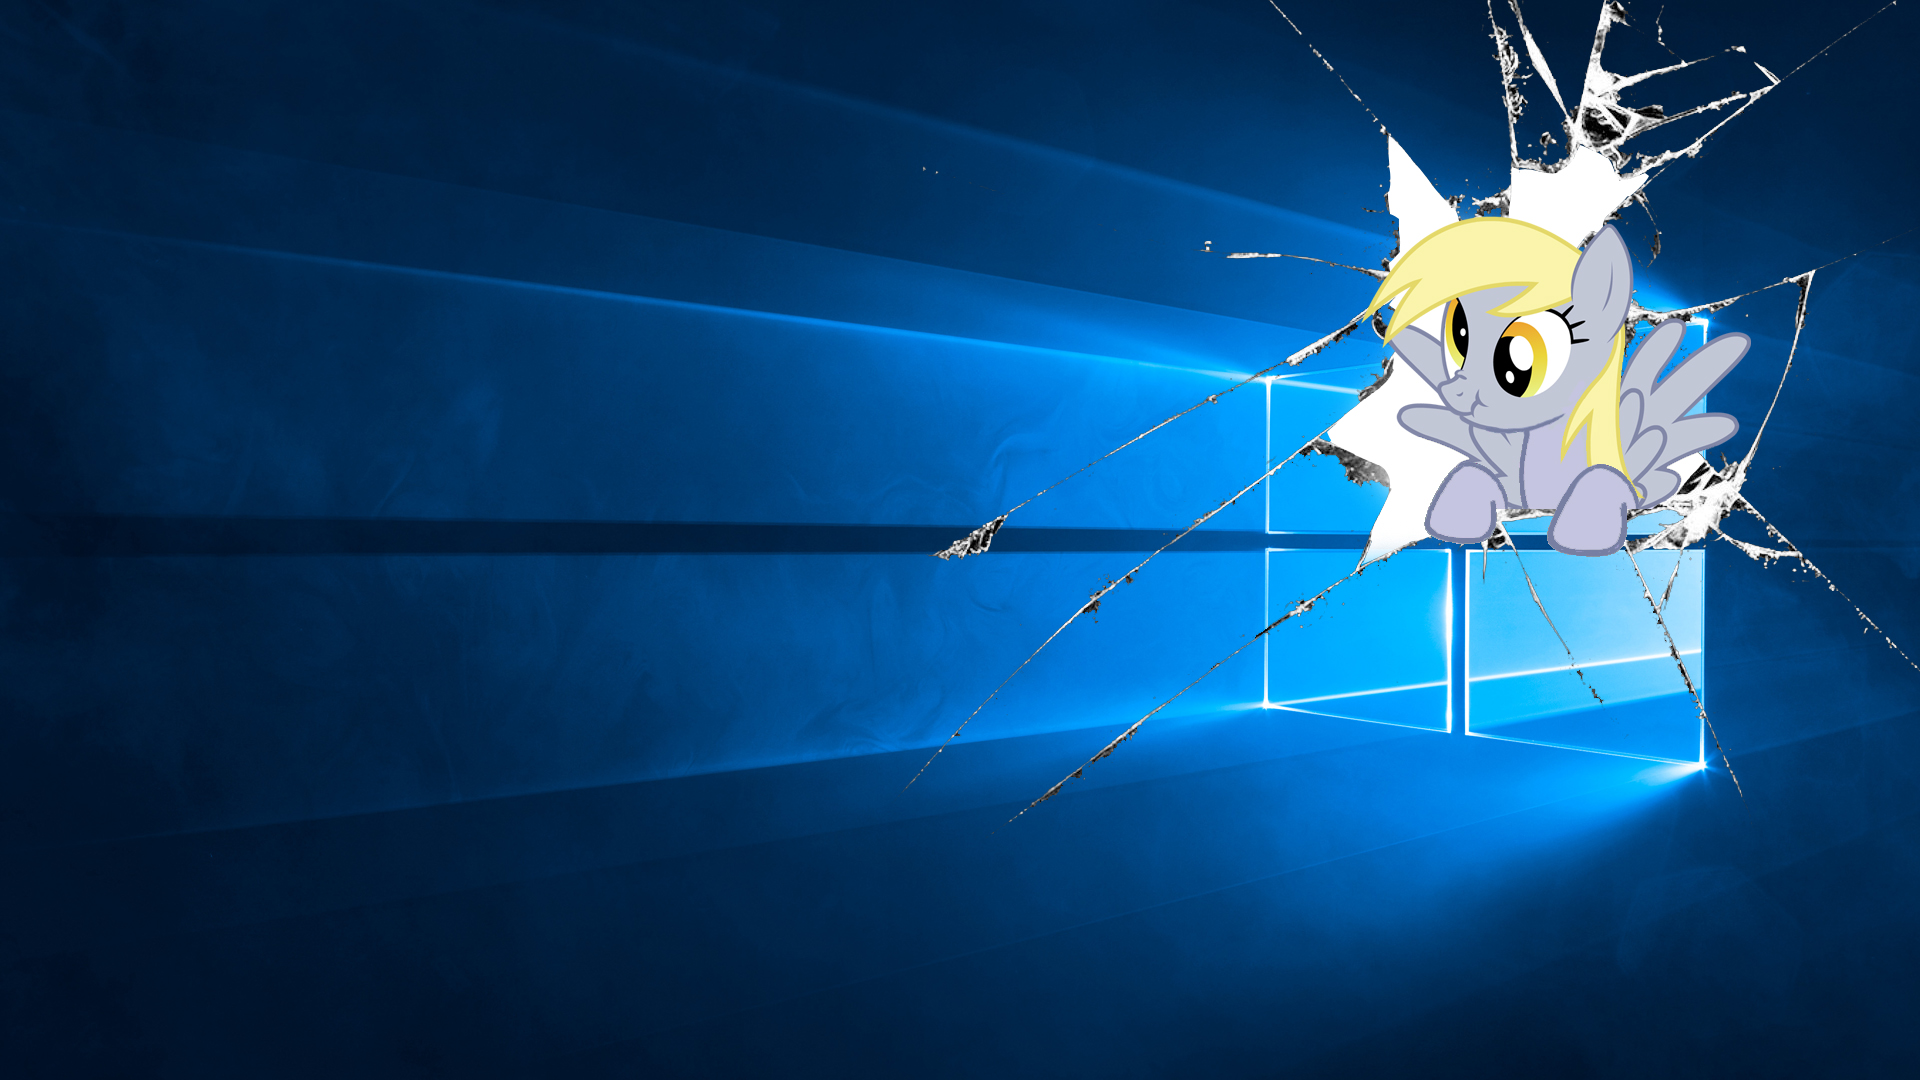 Derpy Hooves Windows 10 Wallpaper Hd 1080x1920p - Derpy Hooves Windows Background , HD Wallpaper & Backgrounds